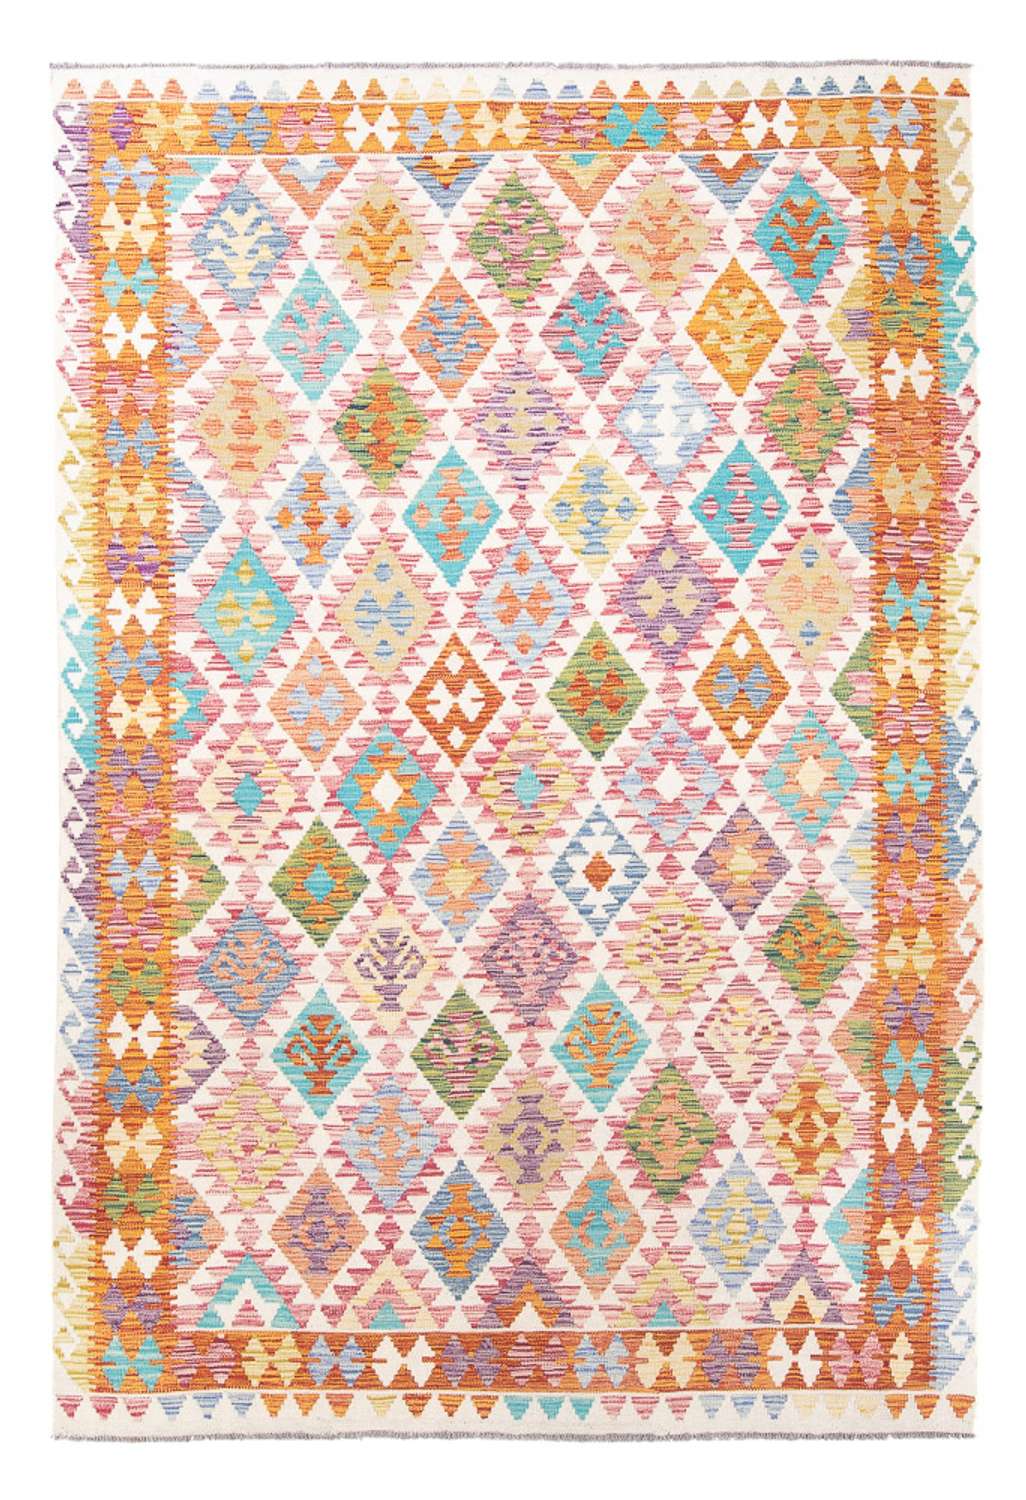 Tapete Kelim - Splash - 291 x 198 cm - multicolorido